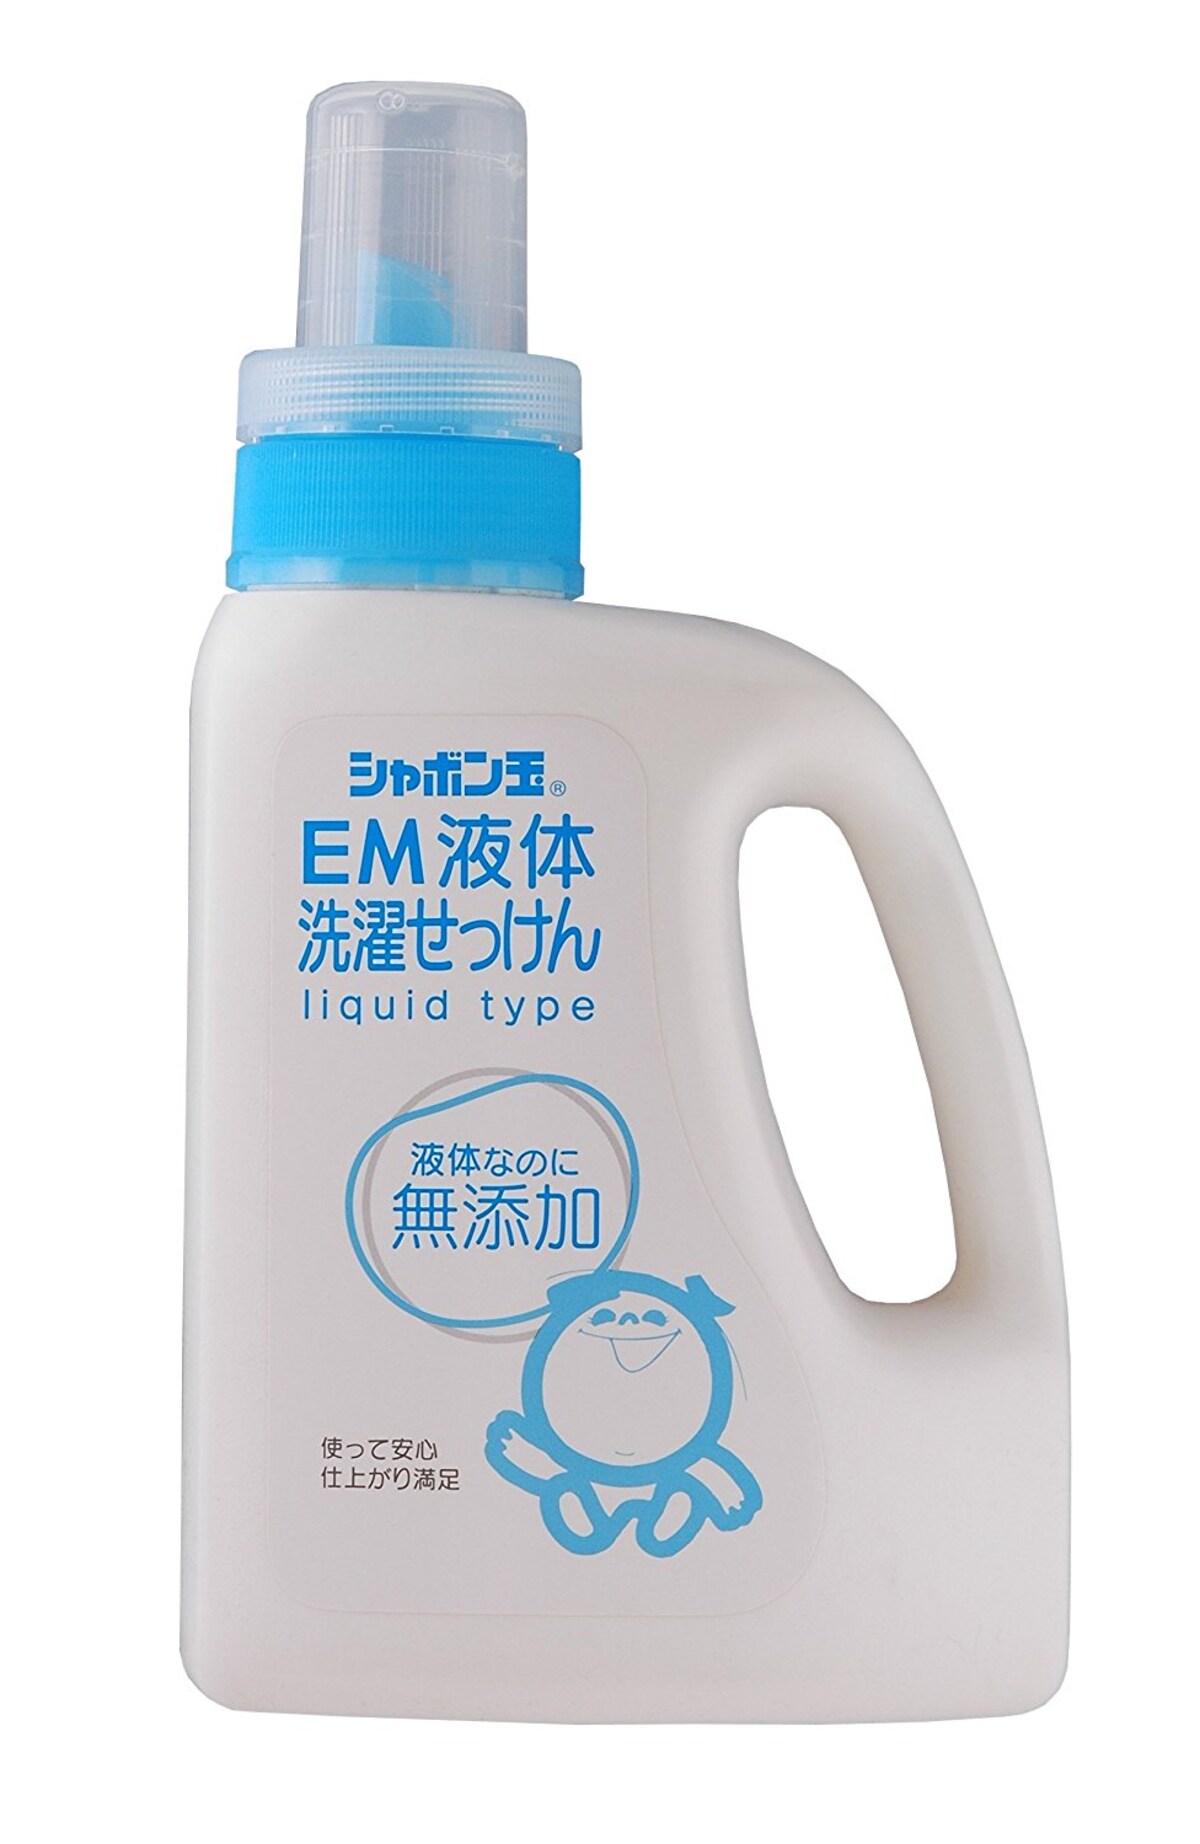 シャボン玉EM洗濯液体石けんボトル(1200ml)